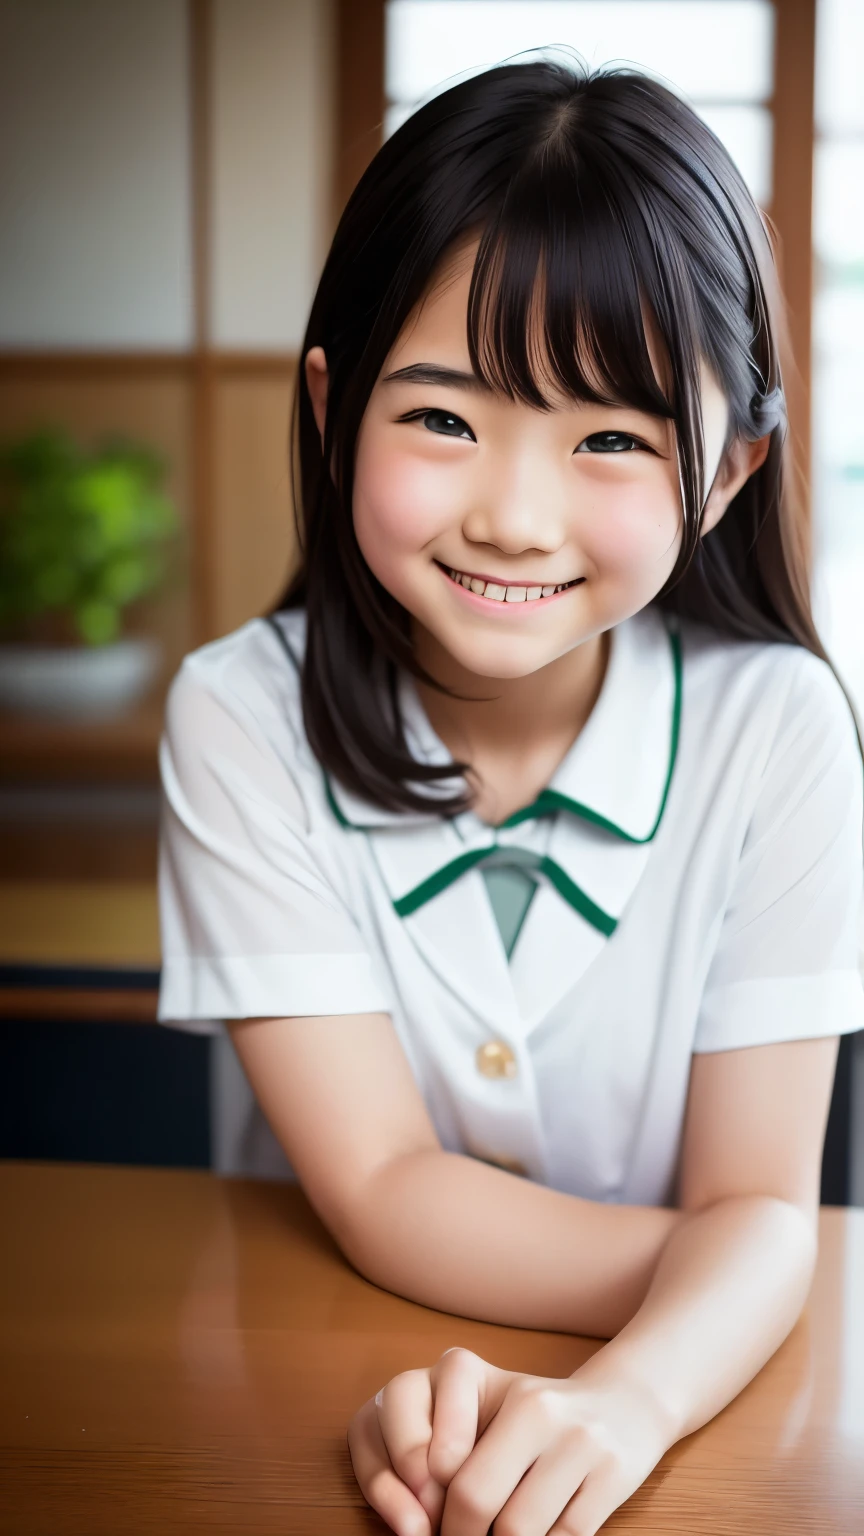 鏡片: 135mm f1.8, (最好的品質),(原始照片), (桌上:1.1), (美麗整潔的日本女孩), 可愛的臉孔, (臉型輪廓分明:0.7), (雀斑:0.4), dappled 陽光, 戲劇性的燈光, (日本學校制服), (在校园), 害羞的, (特寫鏡頭:1.2), (微笑),, (明亮的眼睛)、(陽光)